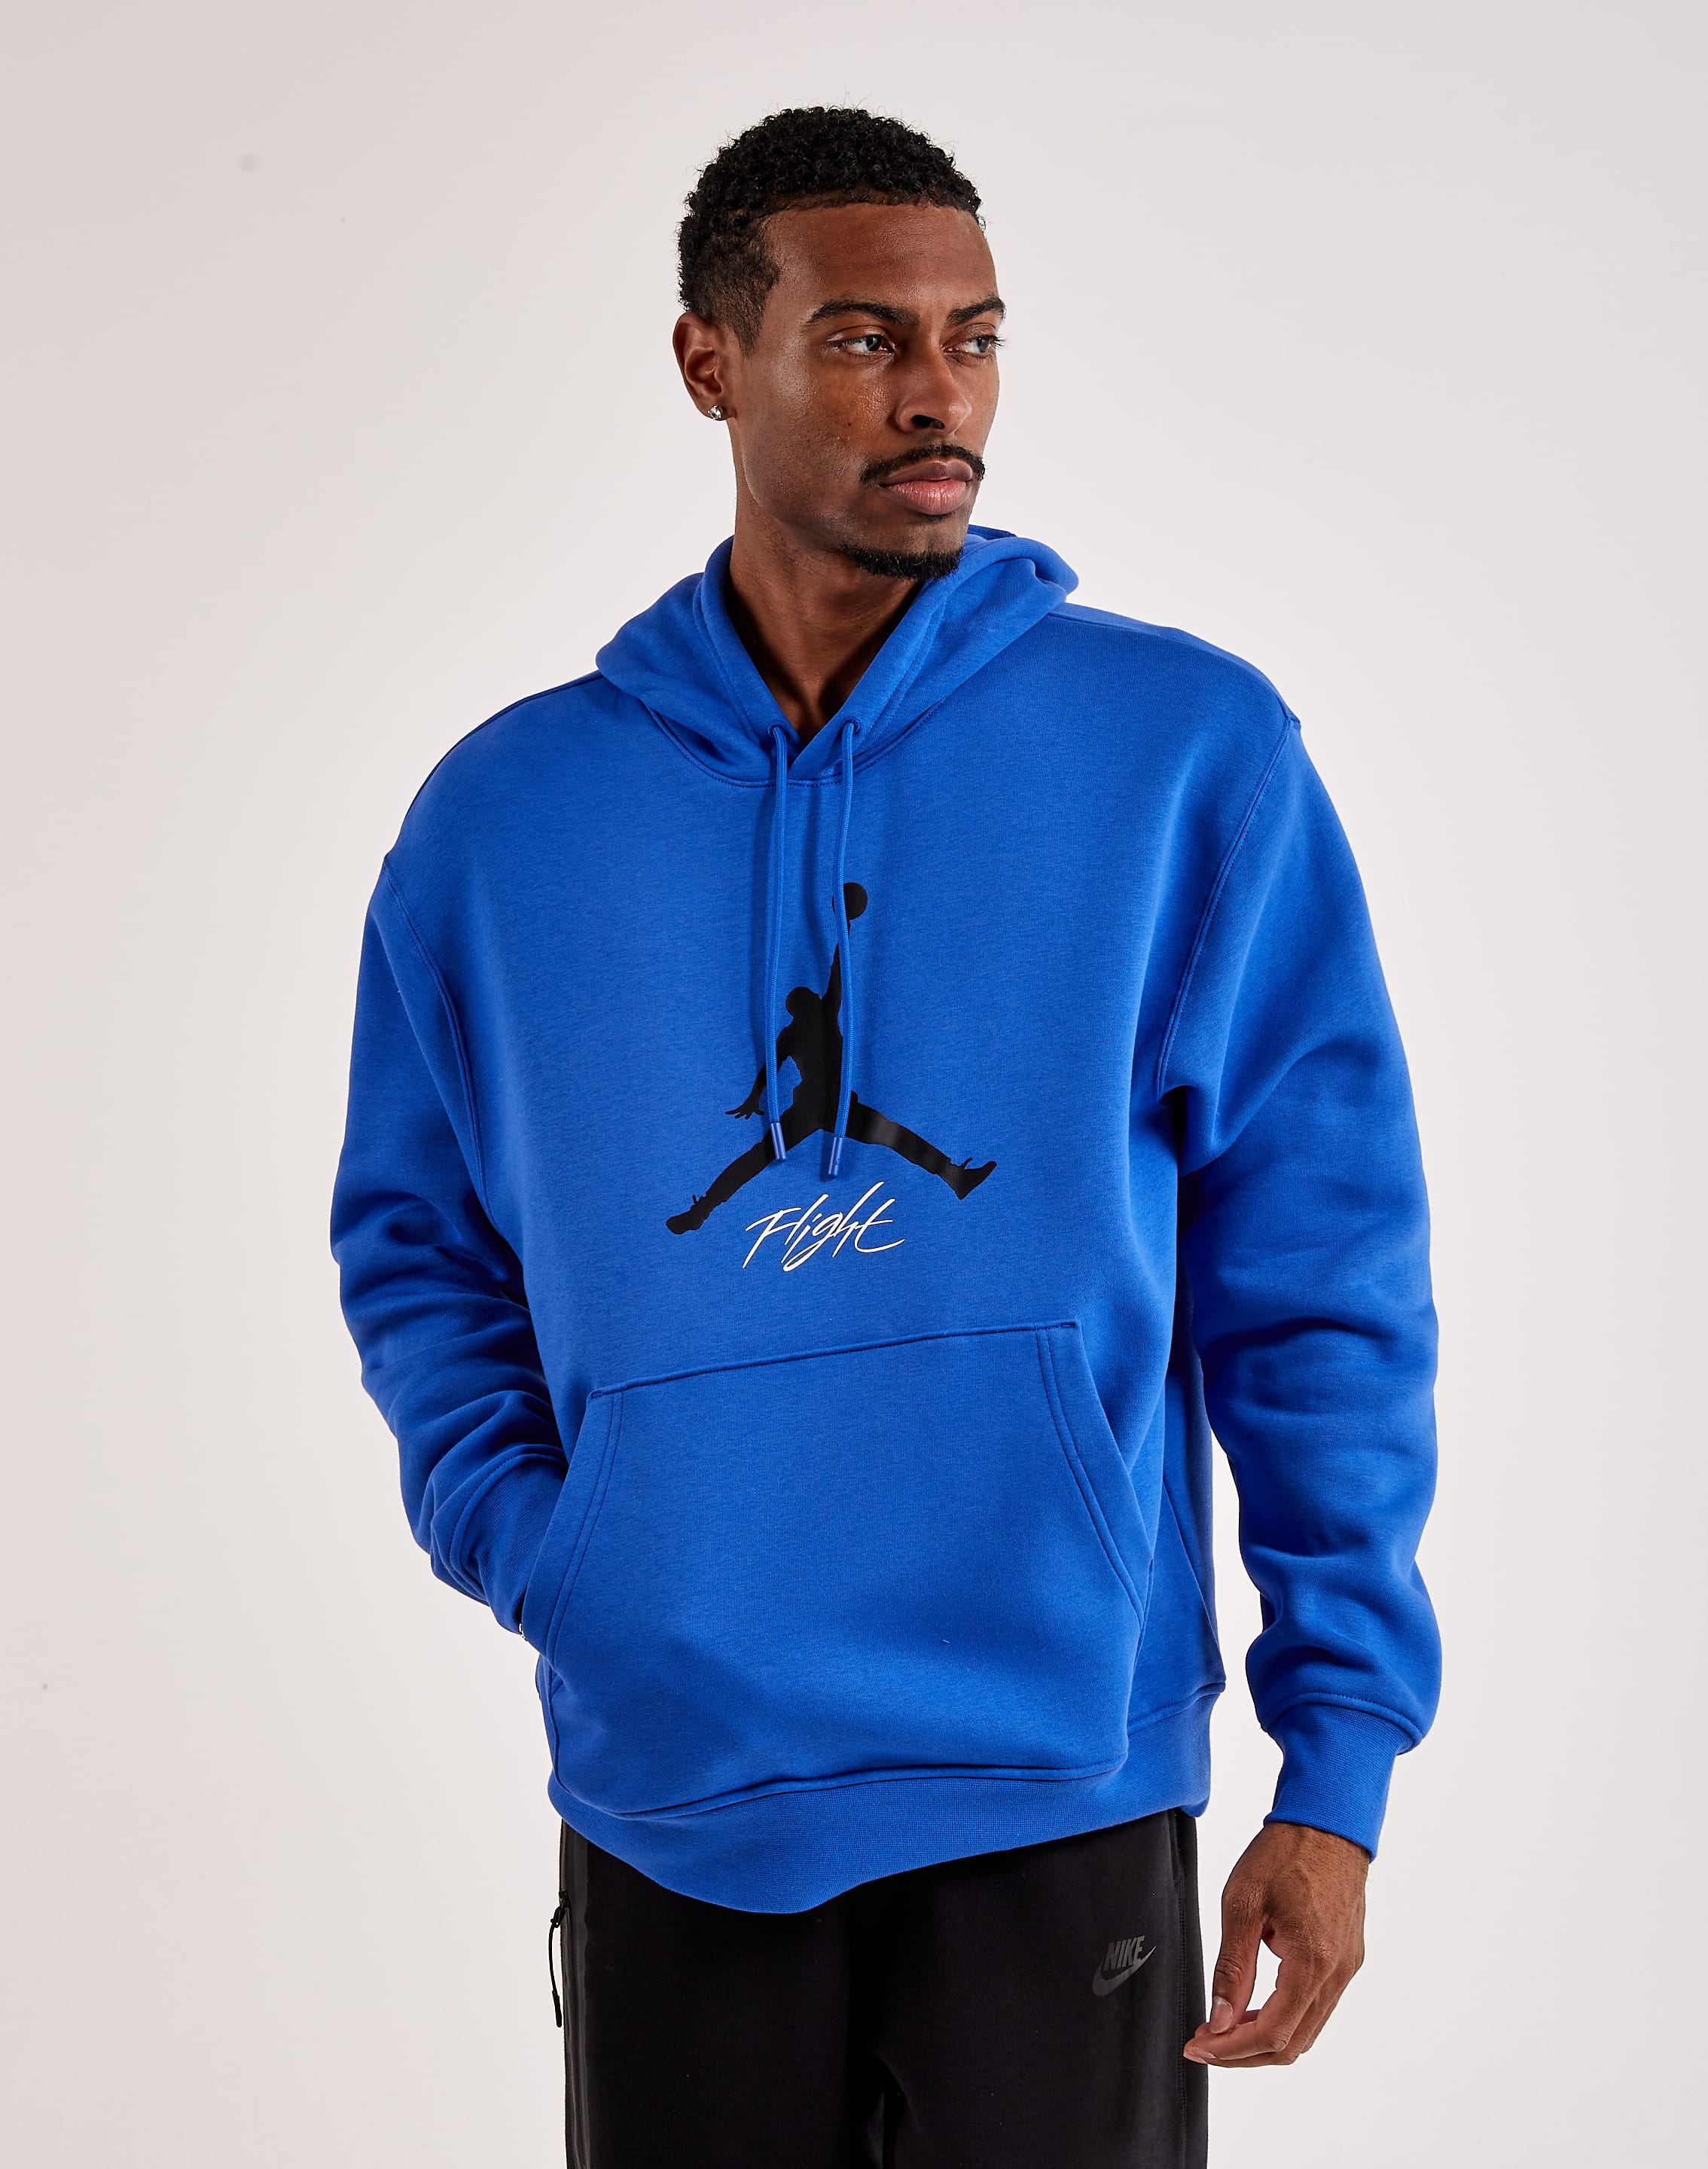 Men's Jordan Essentials Fleece Full Zip Hoodie from Jordan